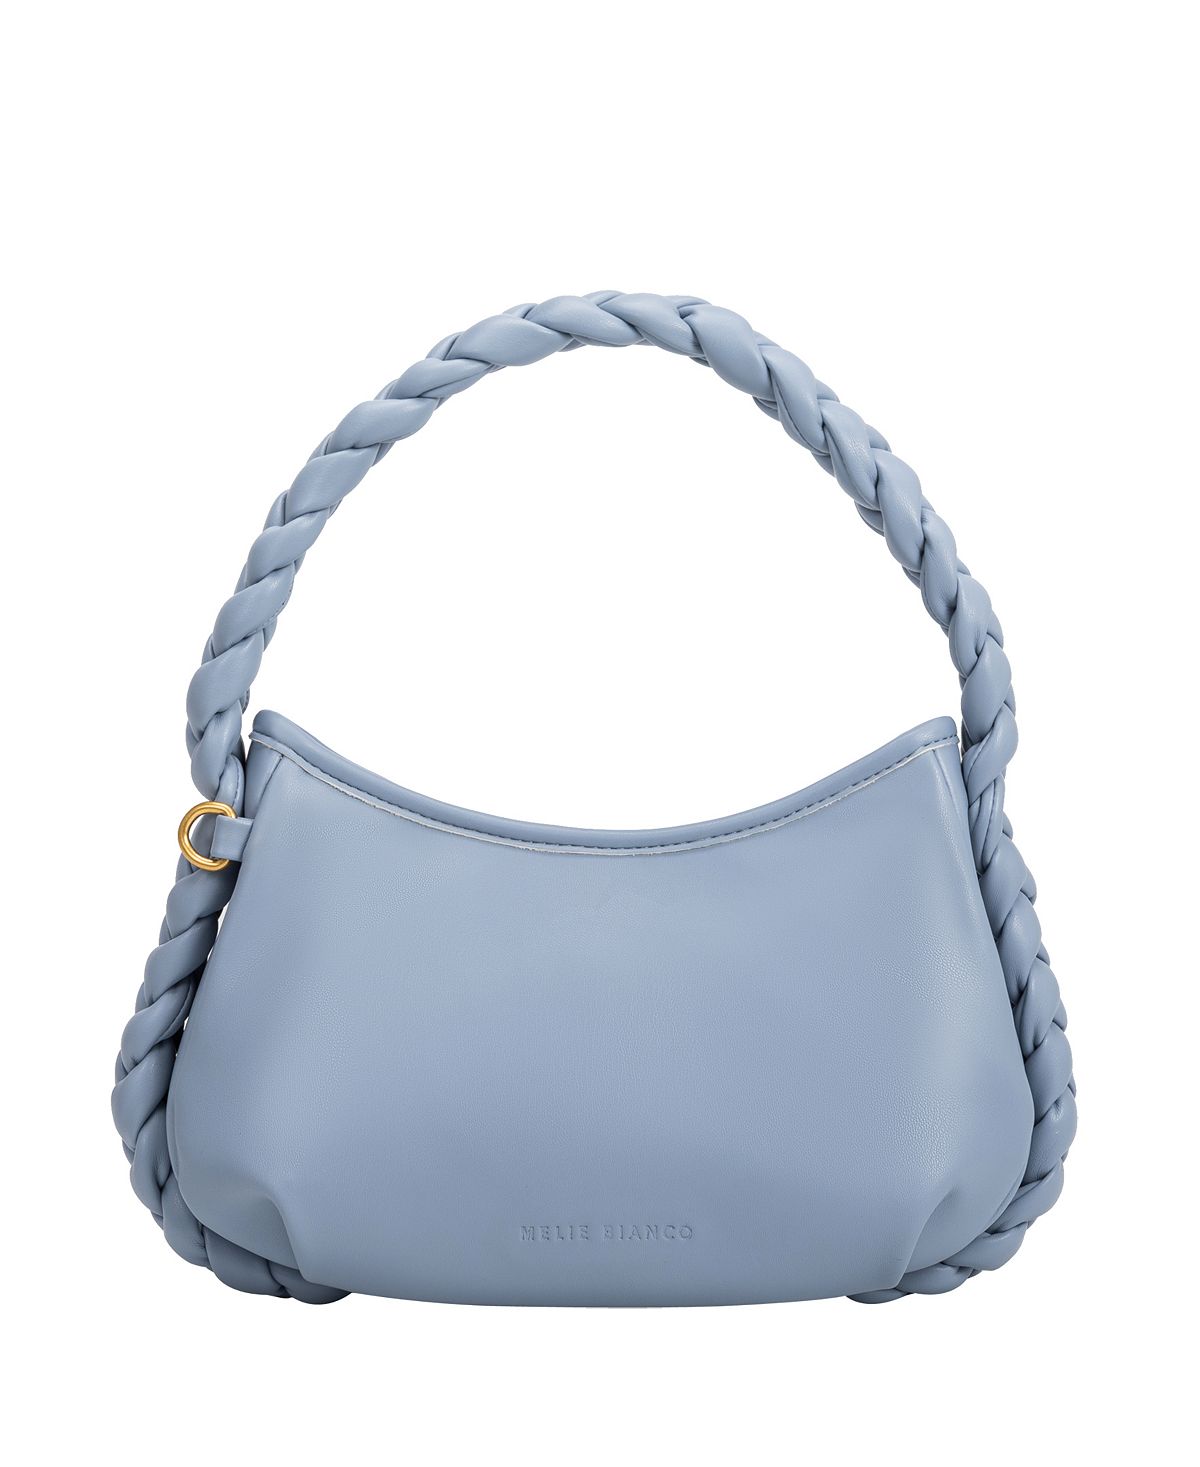 Женская сумка через плечо Eliana через плечо Melie Bianco, синий женская большая сумка sylvie melie bianco черный